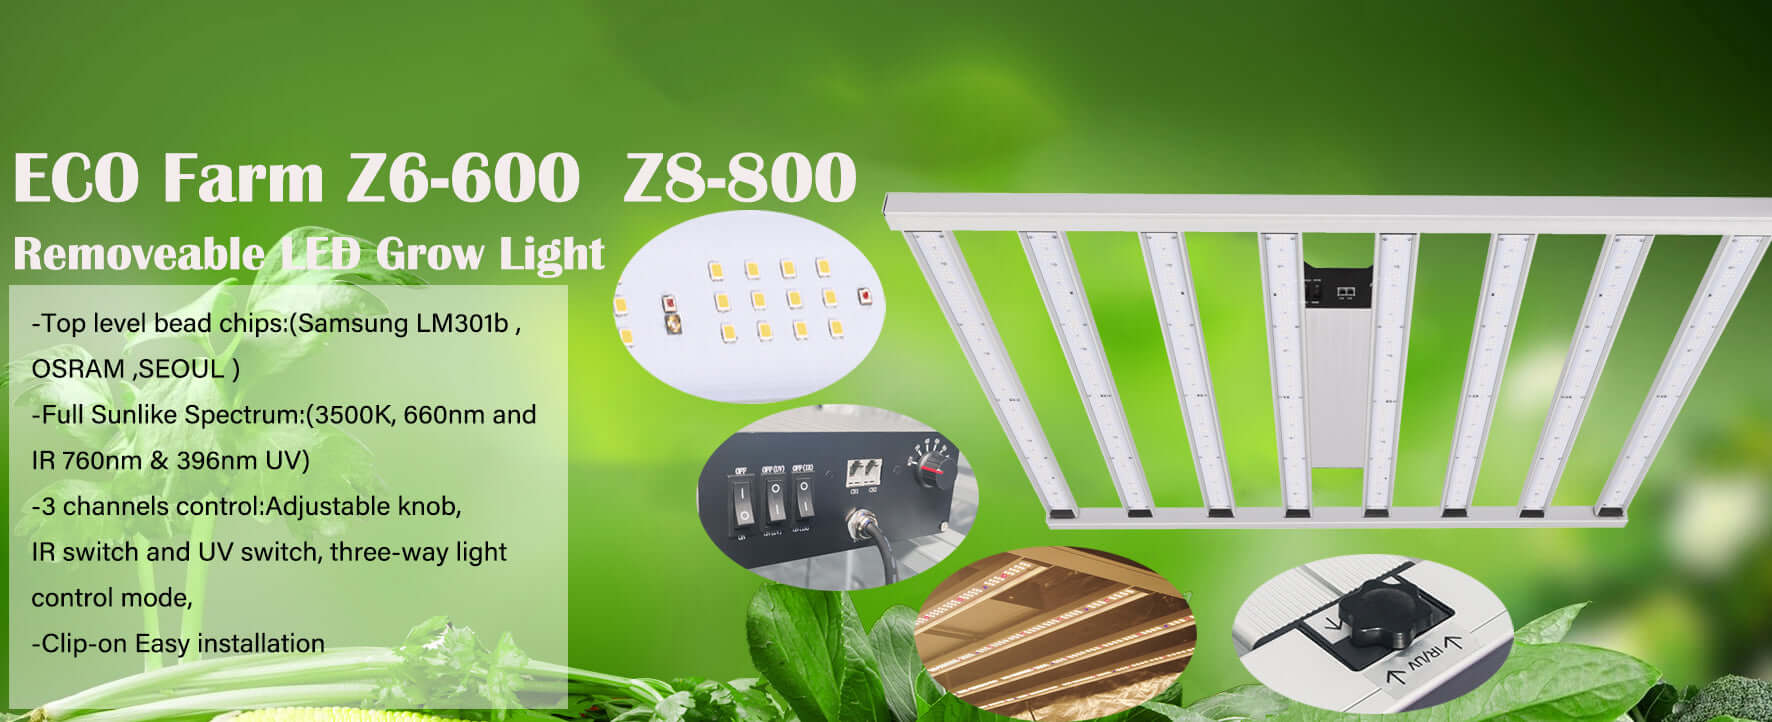 Z8-800W-LED-GROW-LIGHT-BANNER | ECO Farm